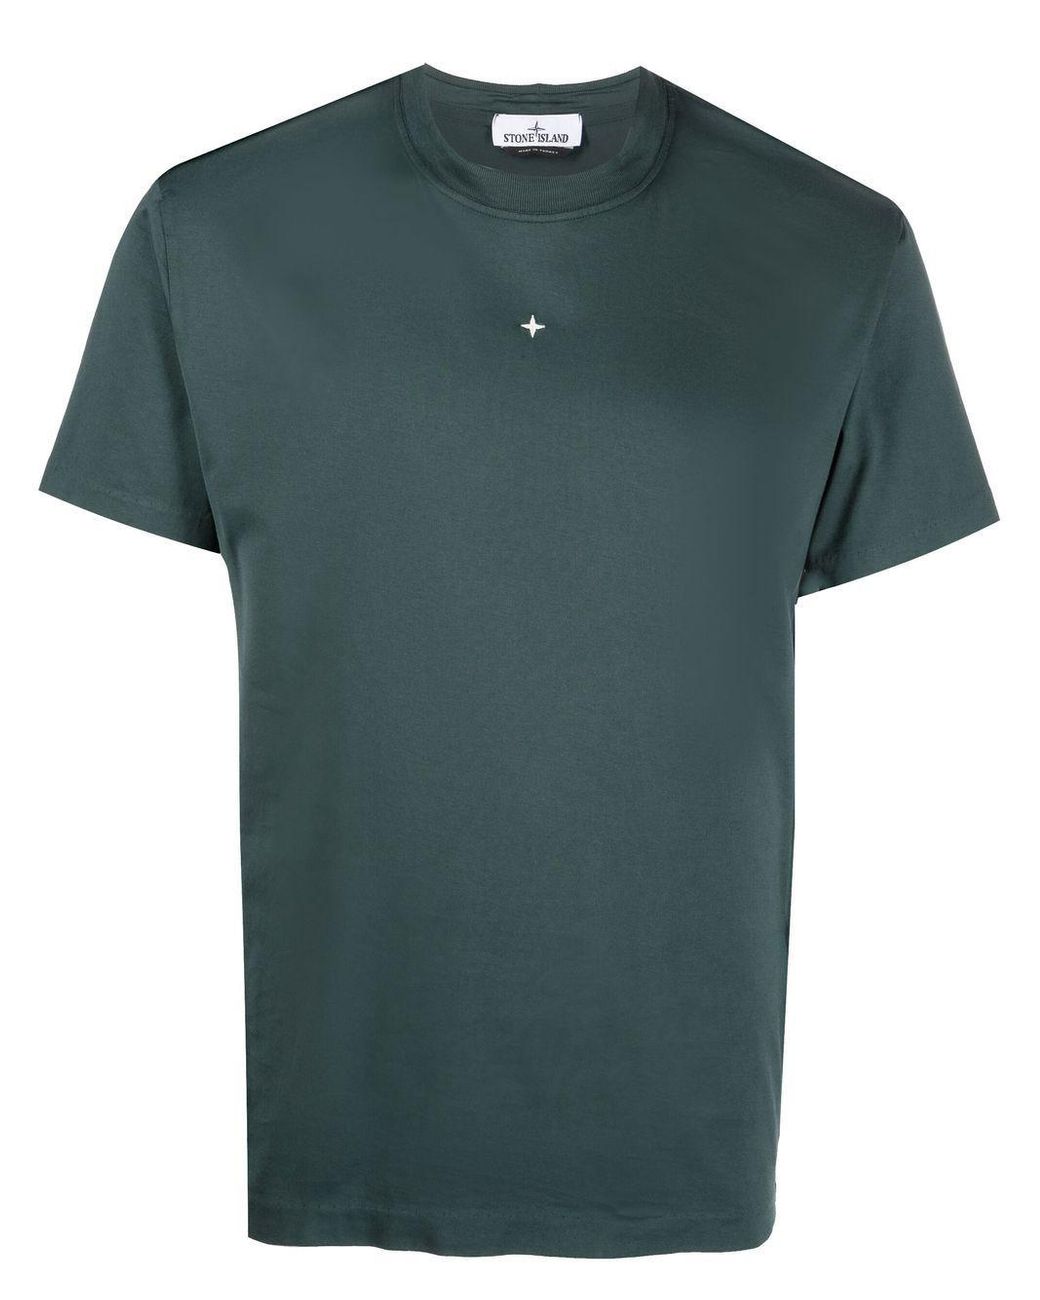 Camiseta con logo Compass bordado Stone Island de Algodón de color Azul para hombre Hombre Ropa de Camisetas y polos de Camisetas de manga corta 